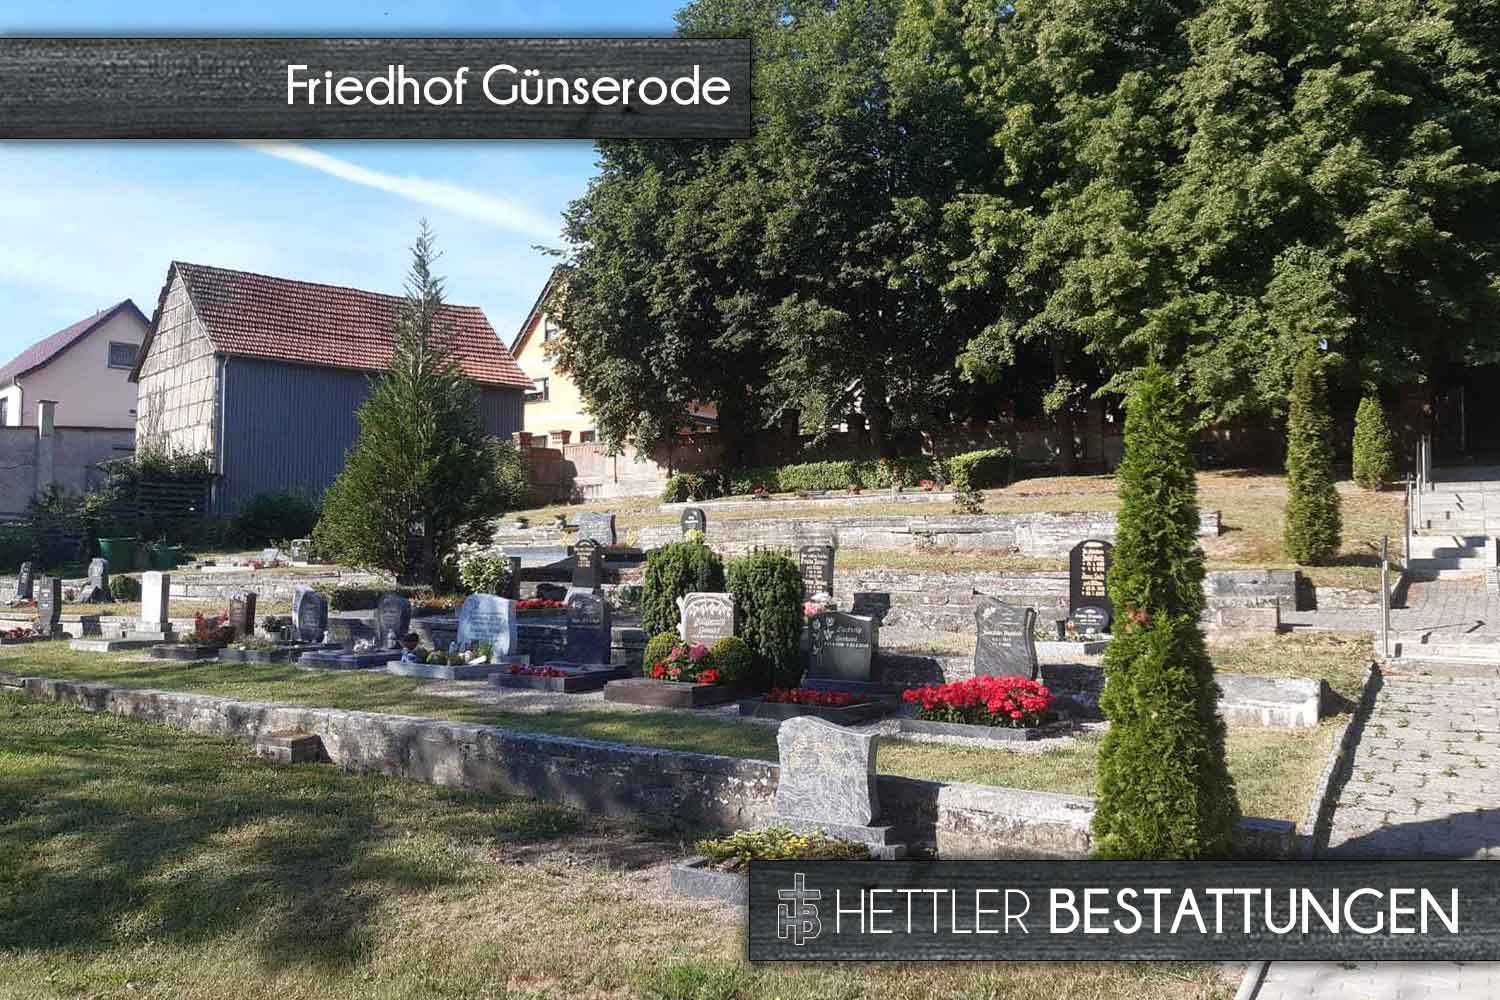 Friedhof in Günserode. Ihr Ort des Abschieds mit Hettler Bestattungen.